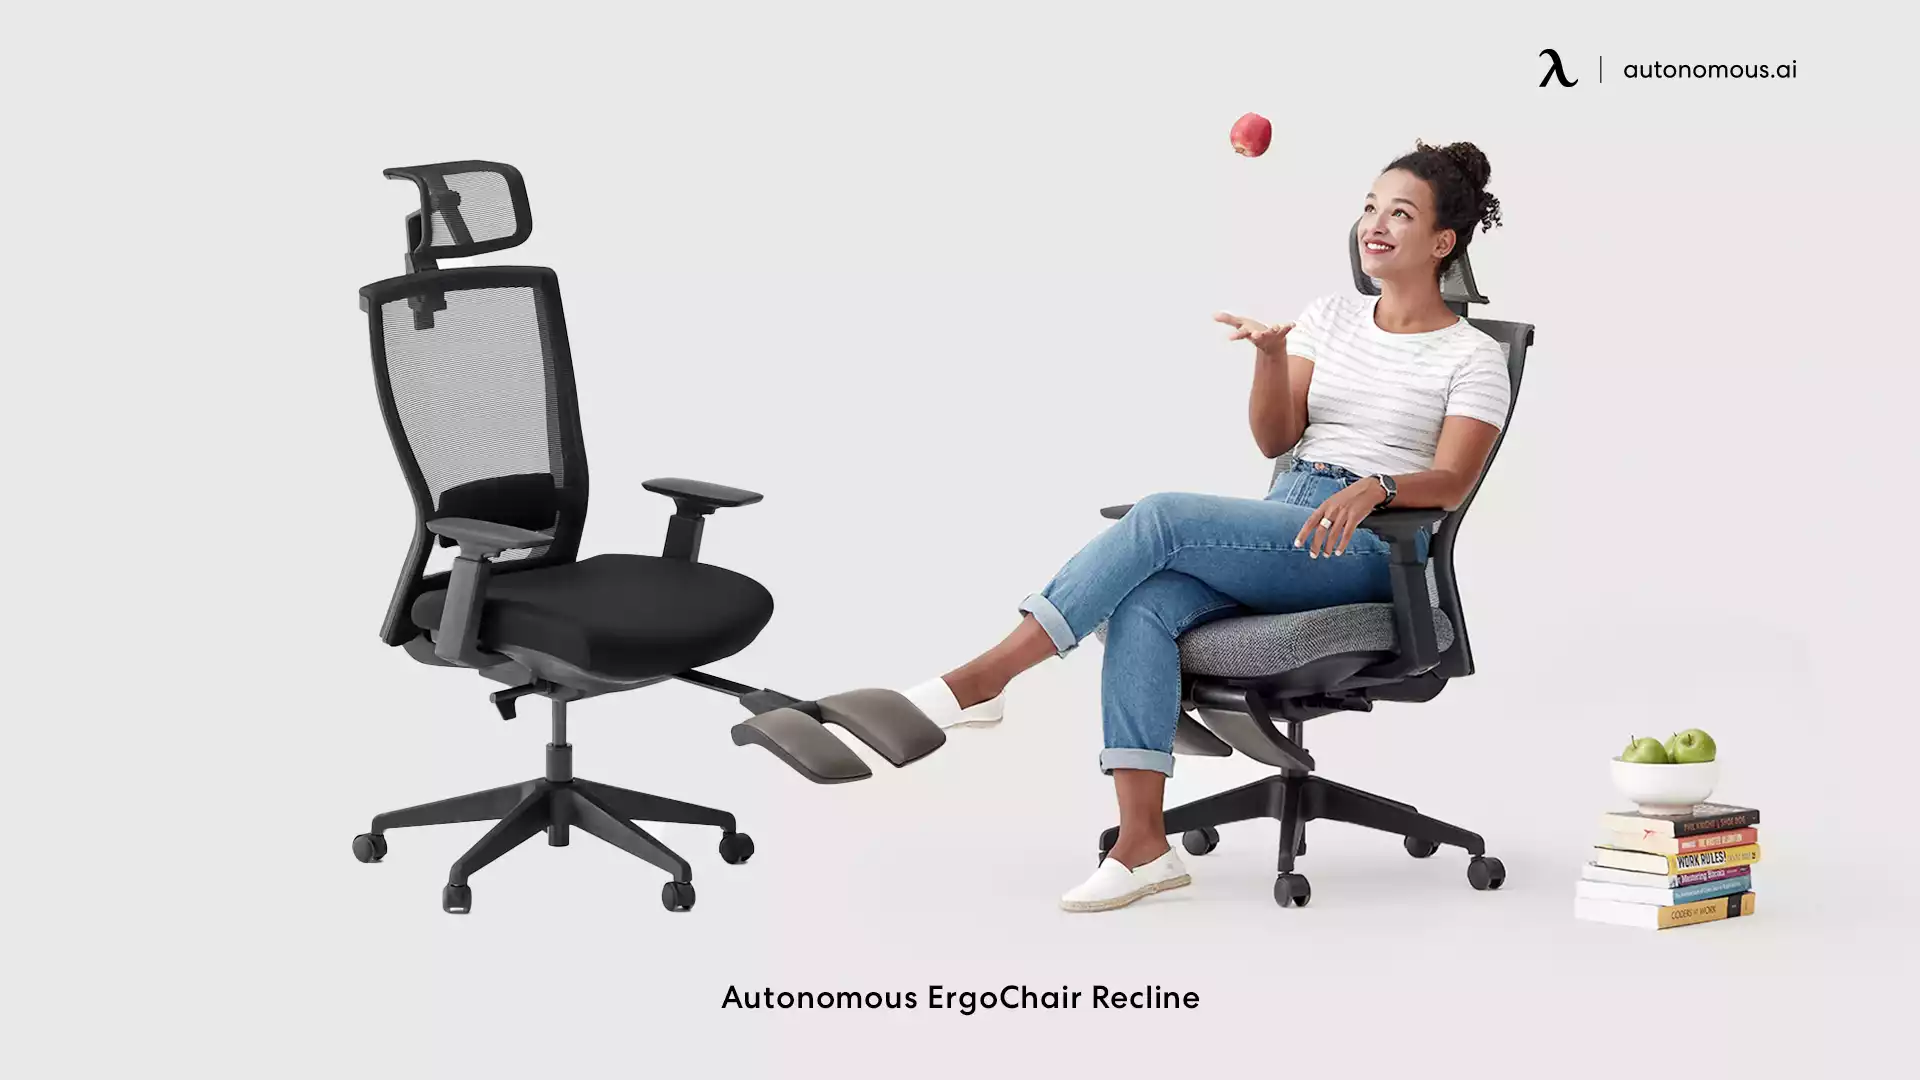 ErgoChair Recline tilt office chair